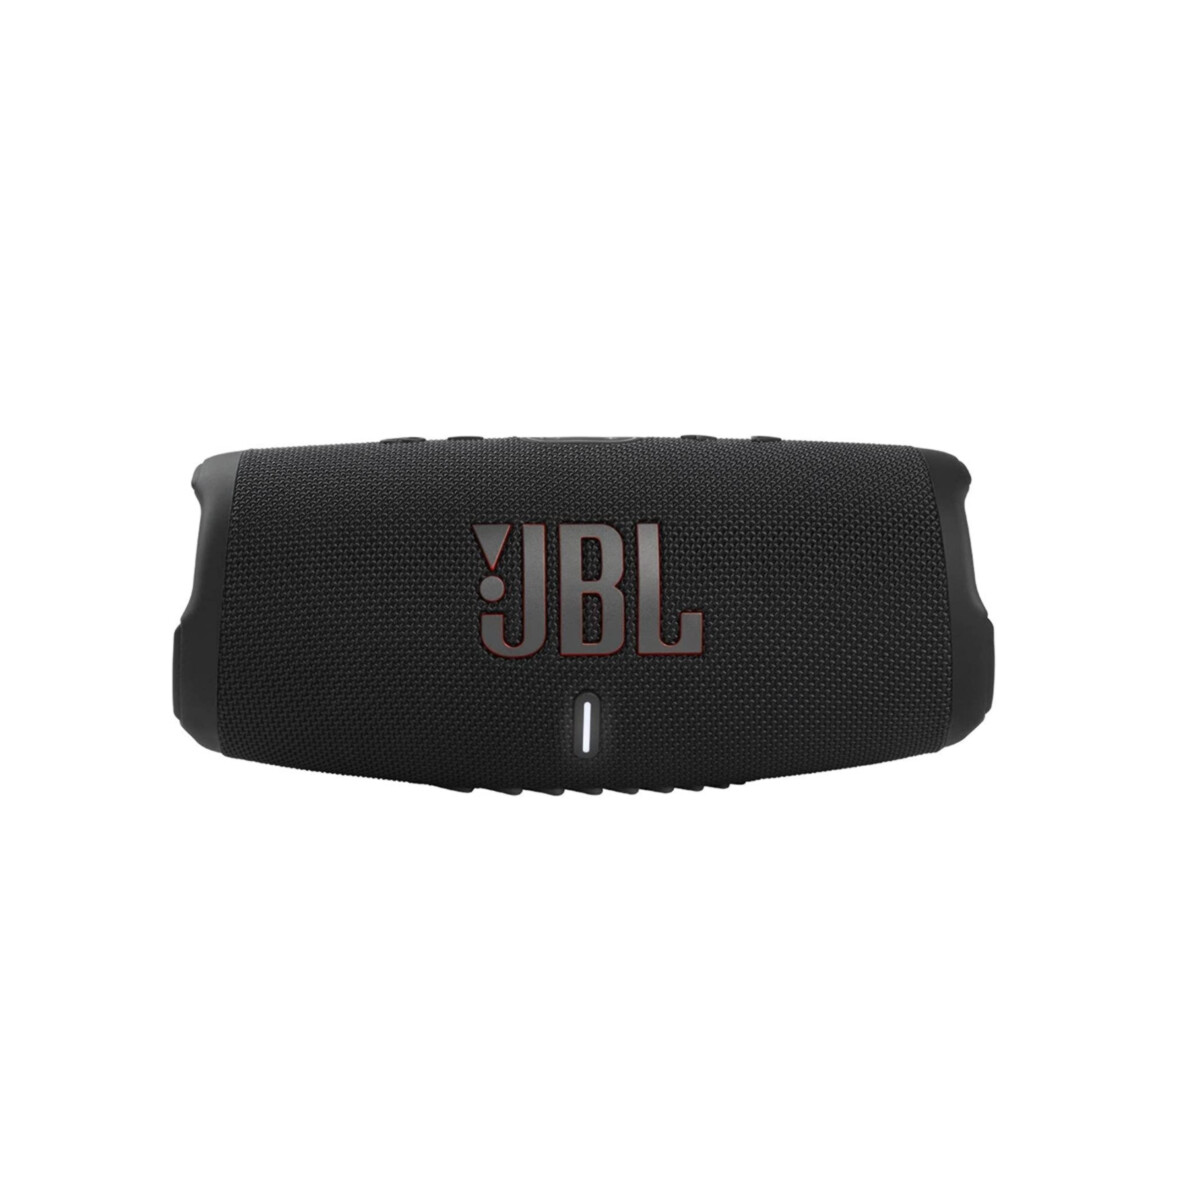 Parlante JBL CHARGE 5 Bluetooth 20 Hrs De Autonomia Funcion Power Bank Resistente Al Agua 